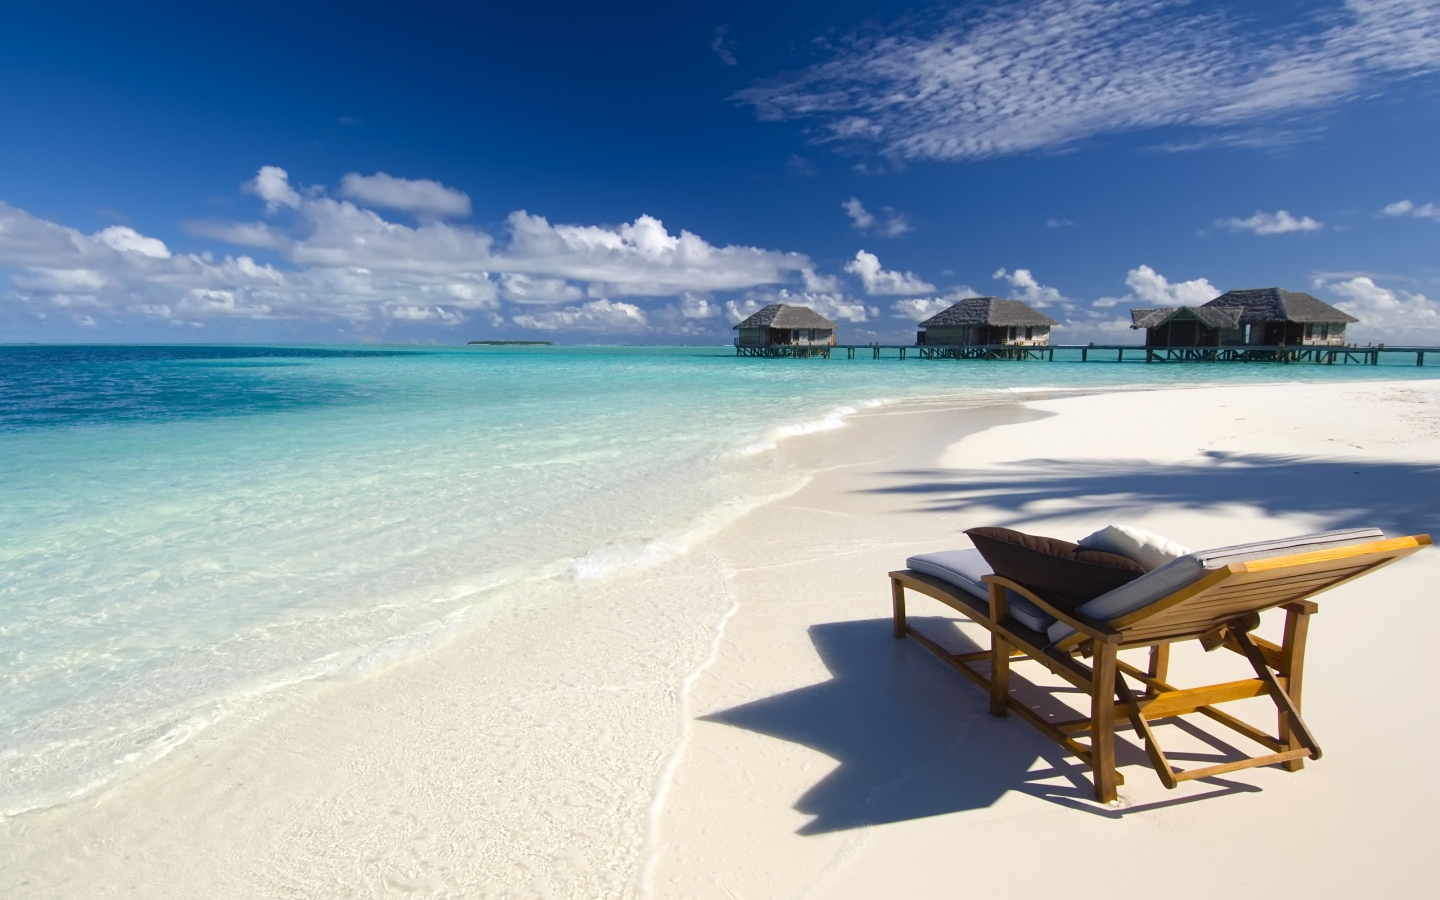 Maldives Conrad Beach for 1440 x 900 widescreen resolution